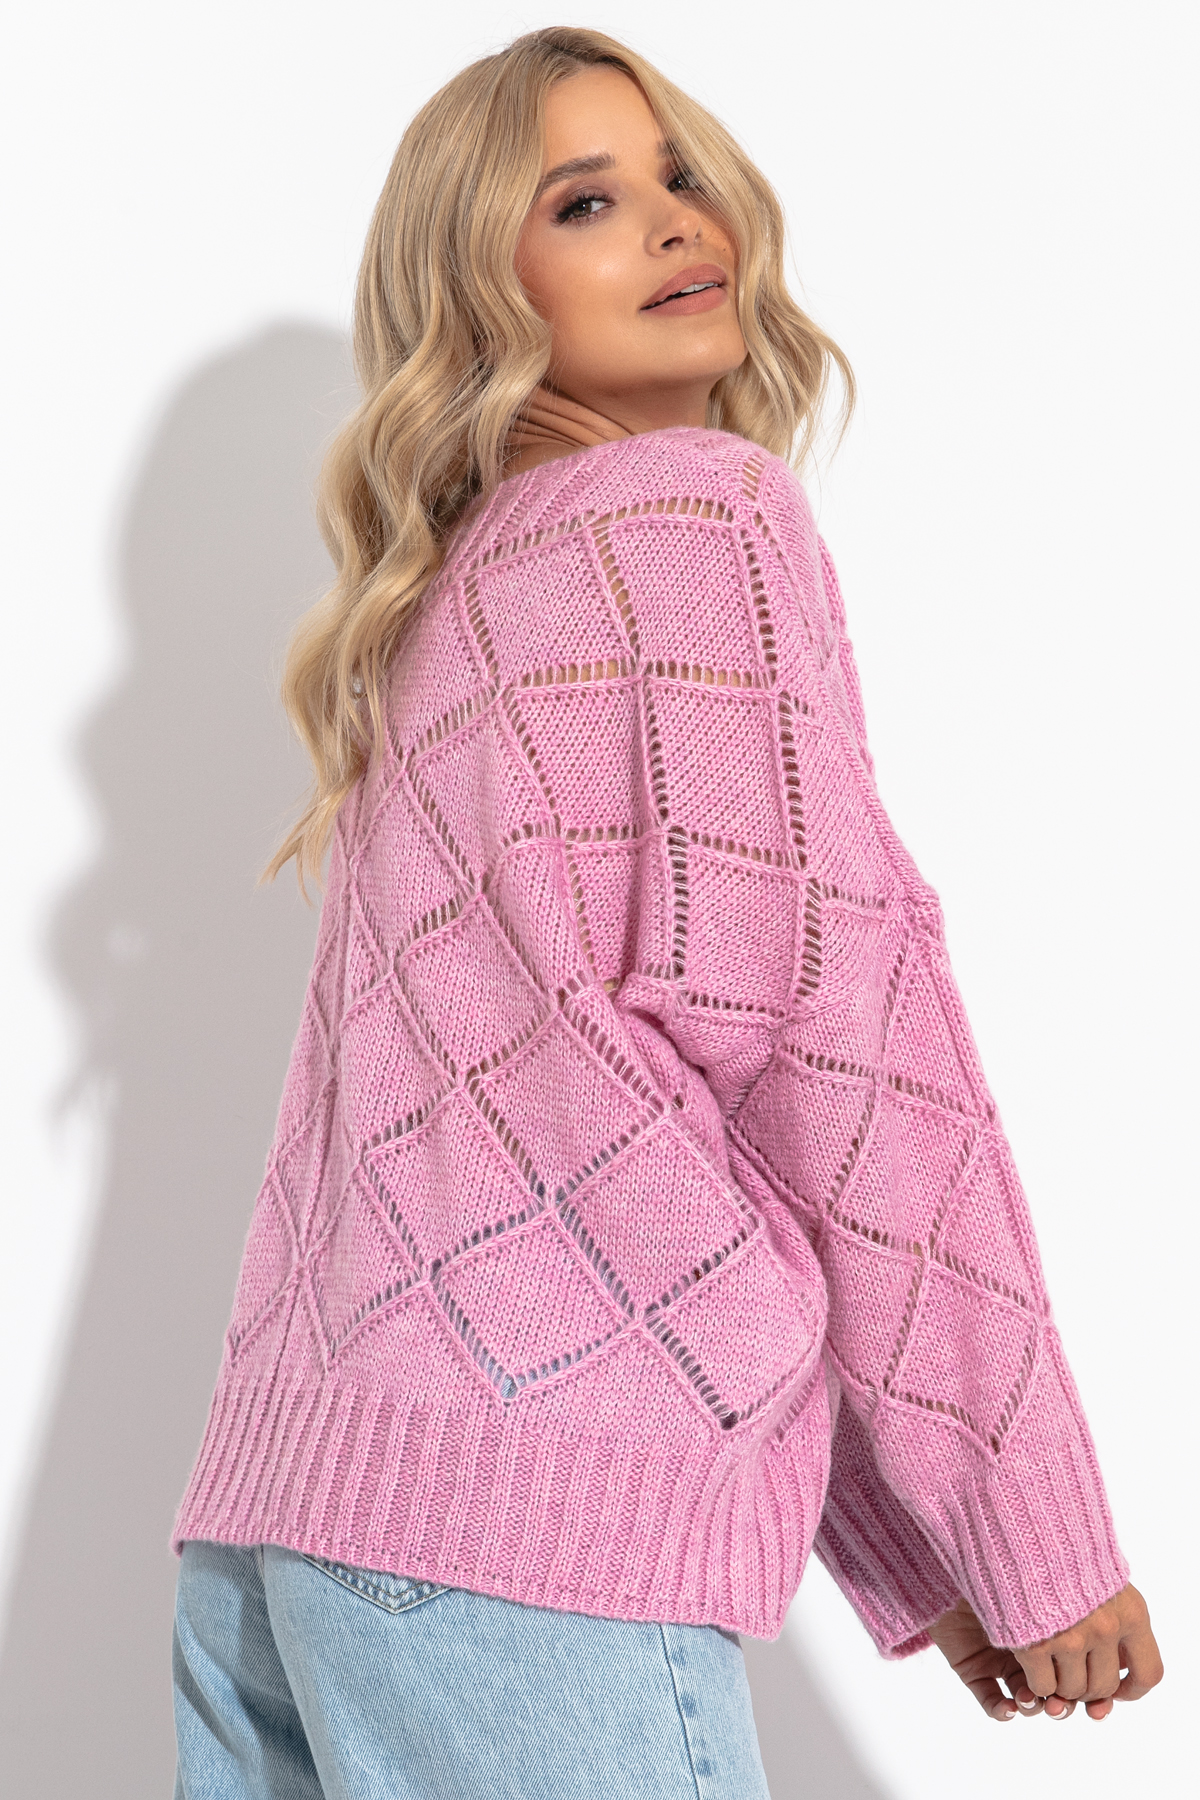 Luźny ażurowy sweter z dekoltem w serek, różowy, Fobya